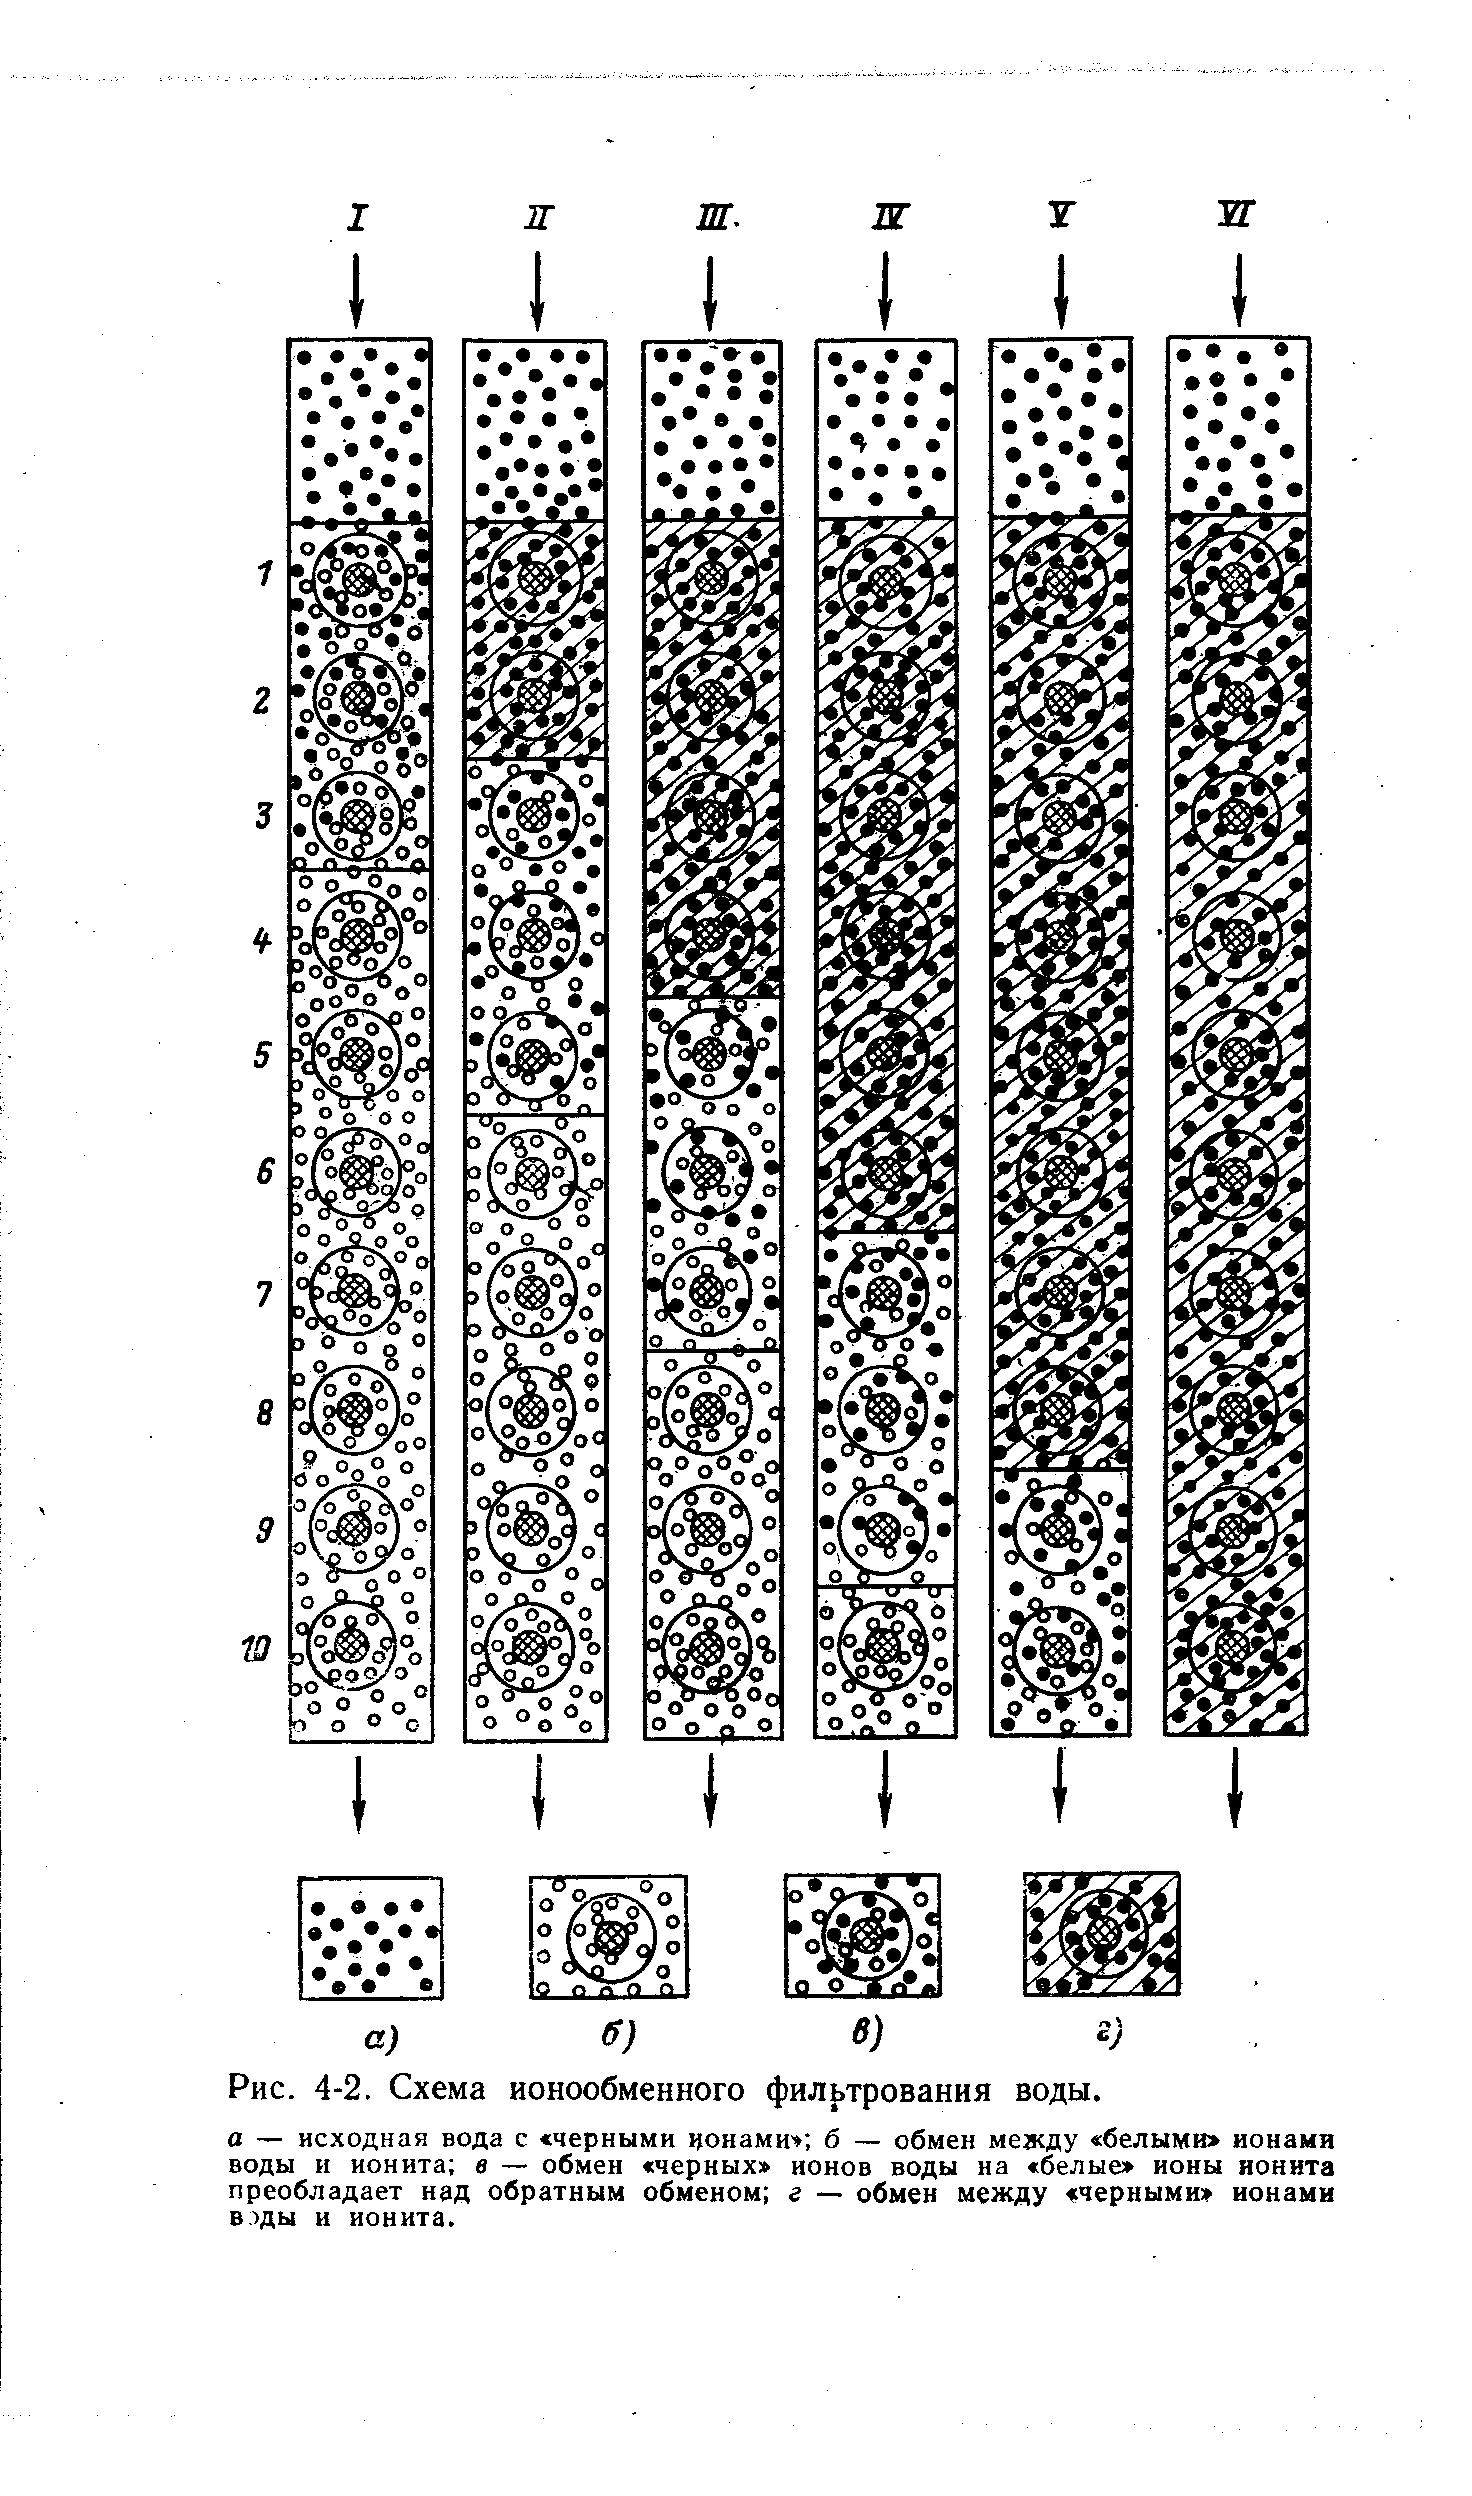 Рис. 4-2. Схема ионообменного фильтрования воды.
